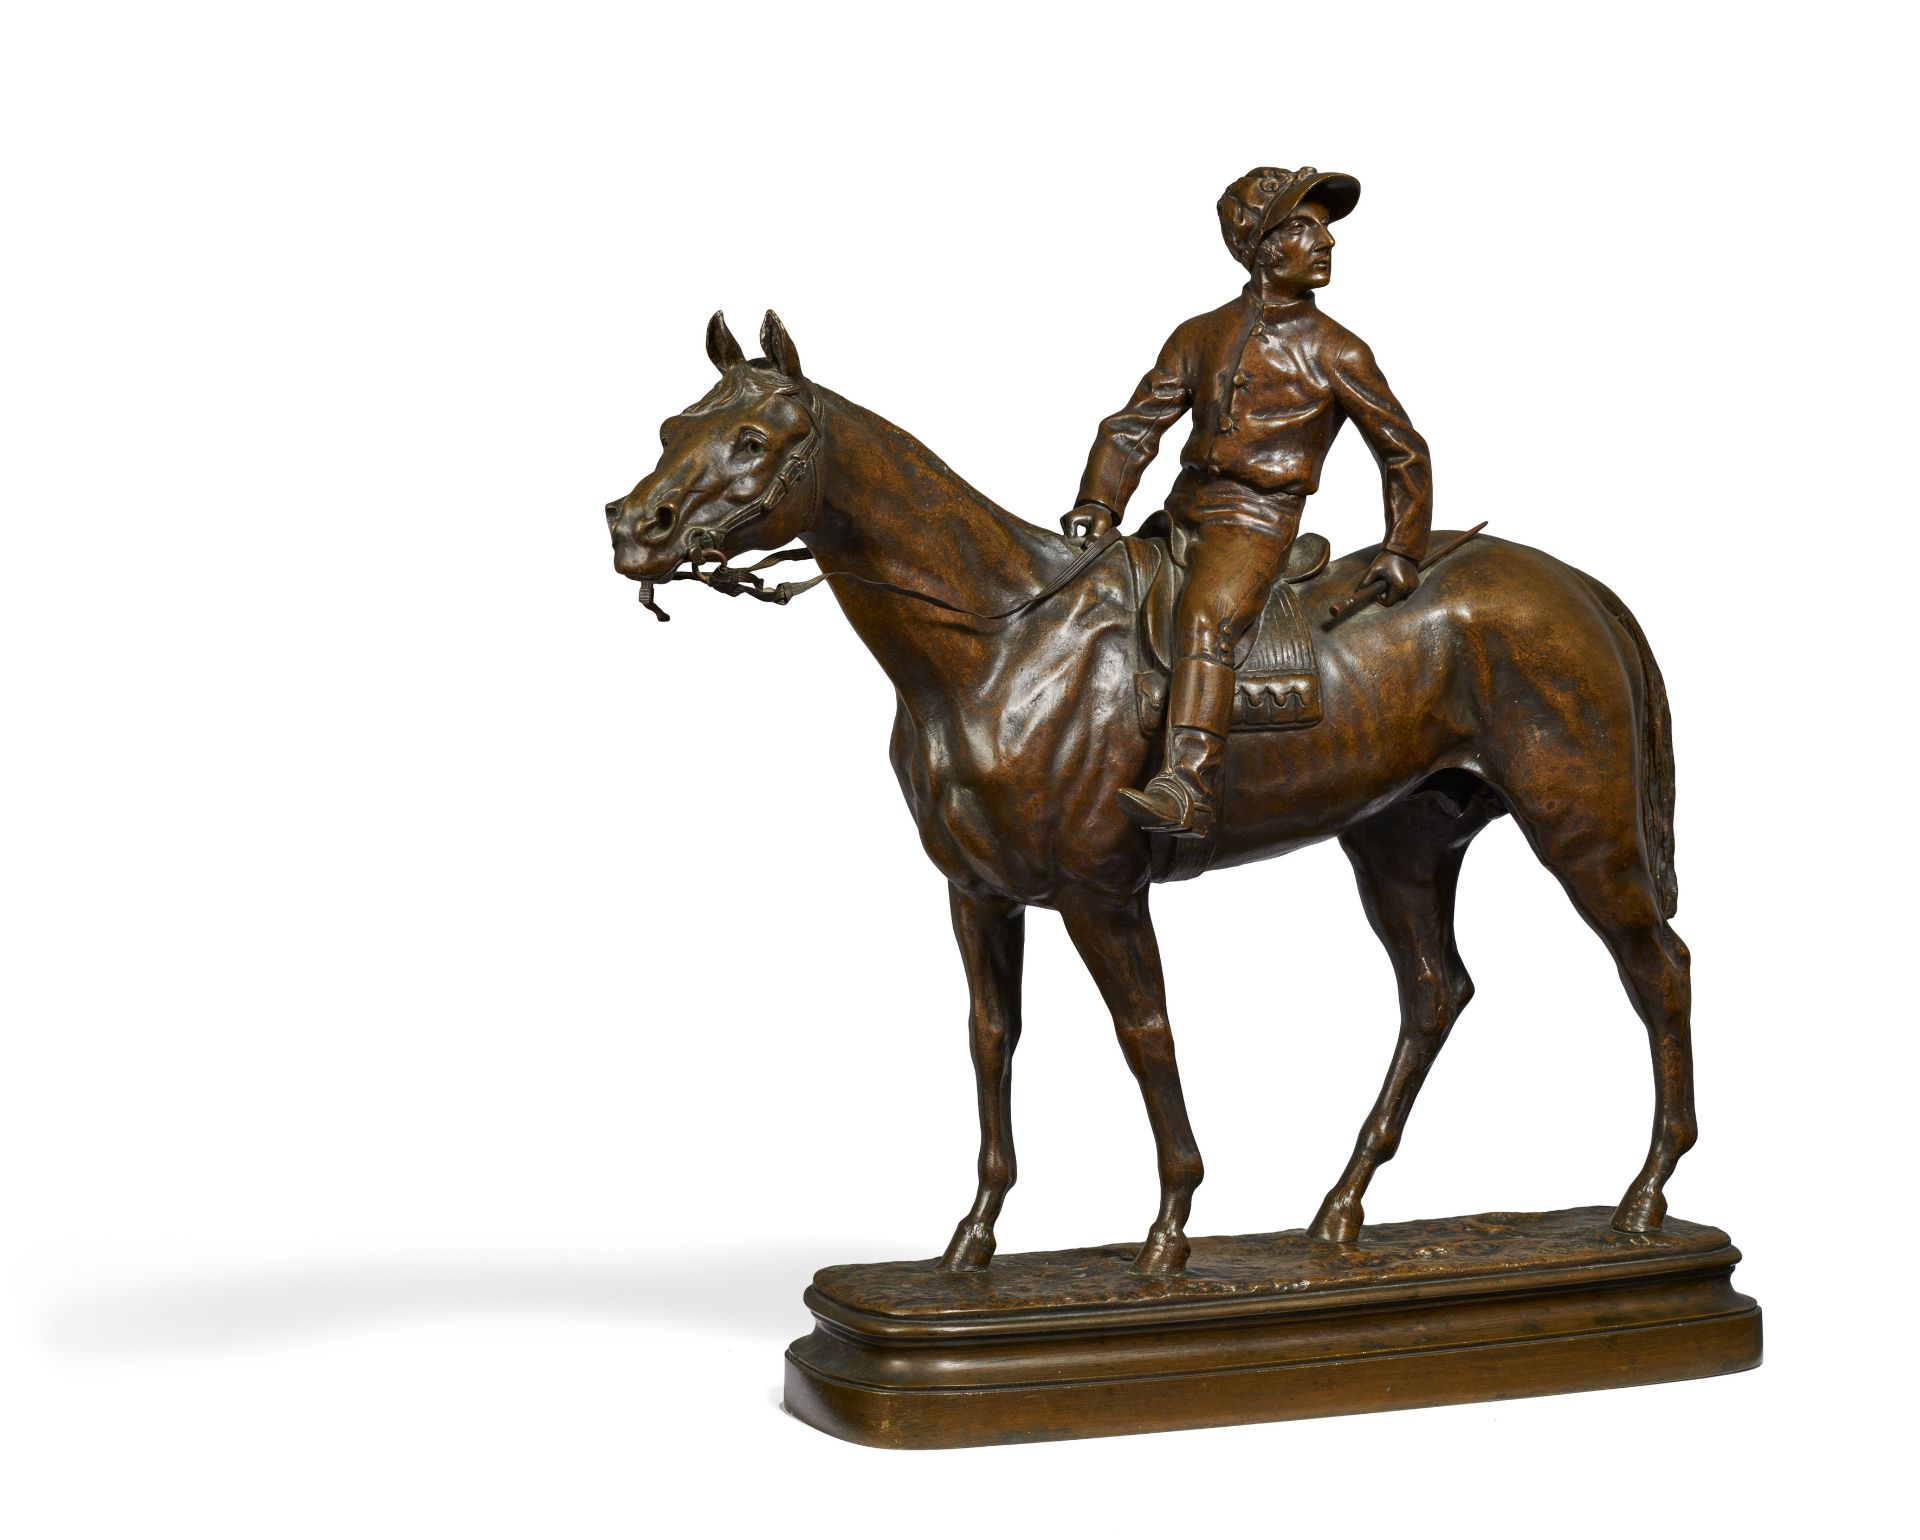 Bureau, Léon. Limoges 1866 - 1906. Jockey auf seinem Pferd. Bronze. Höhe: 48,5cm. Bezeichnet auf der